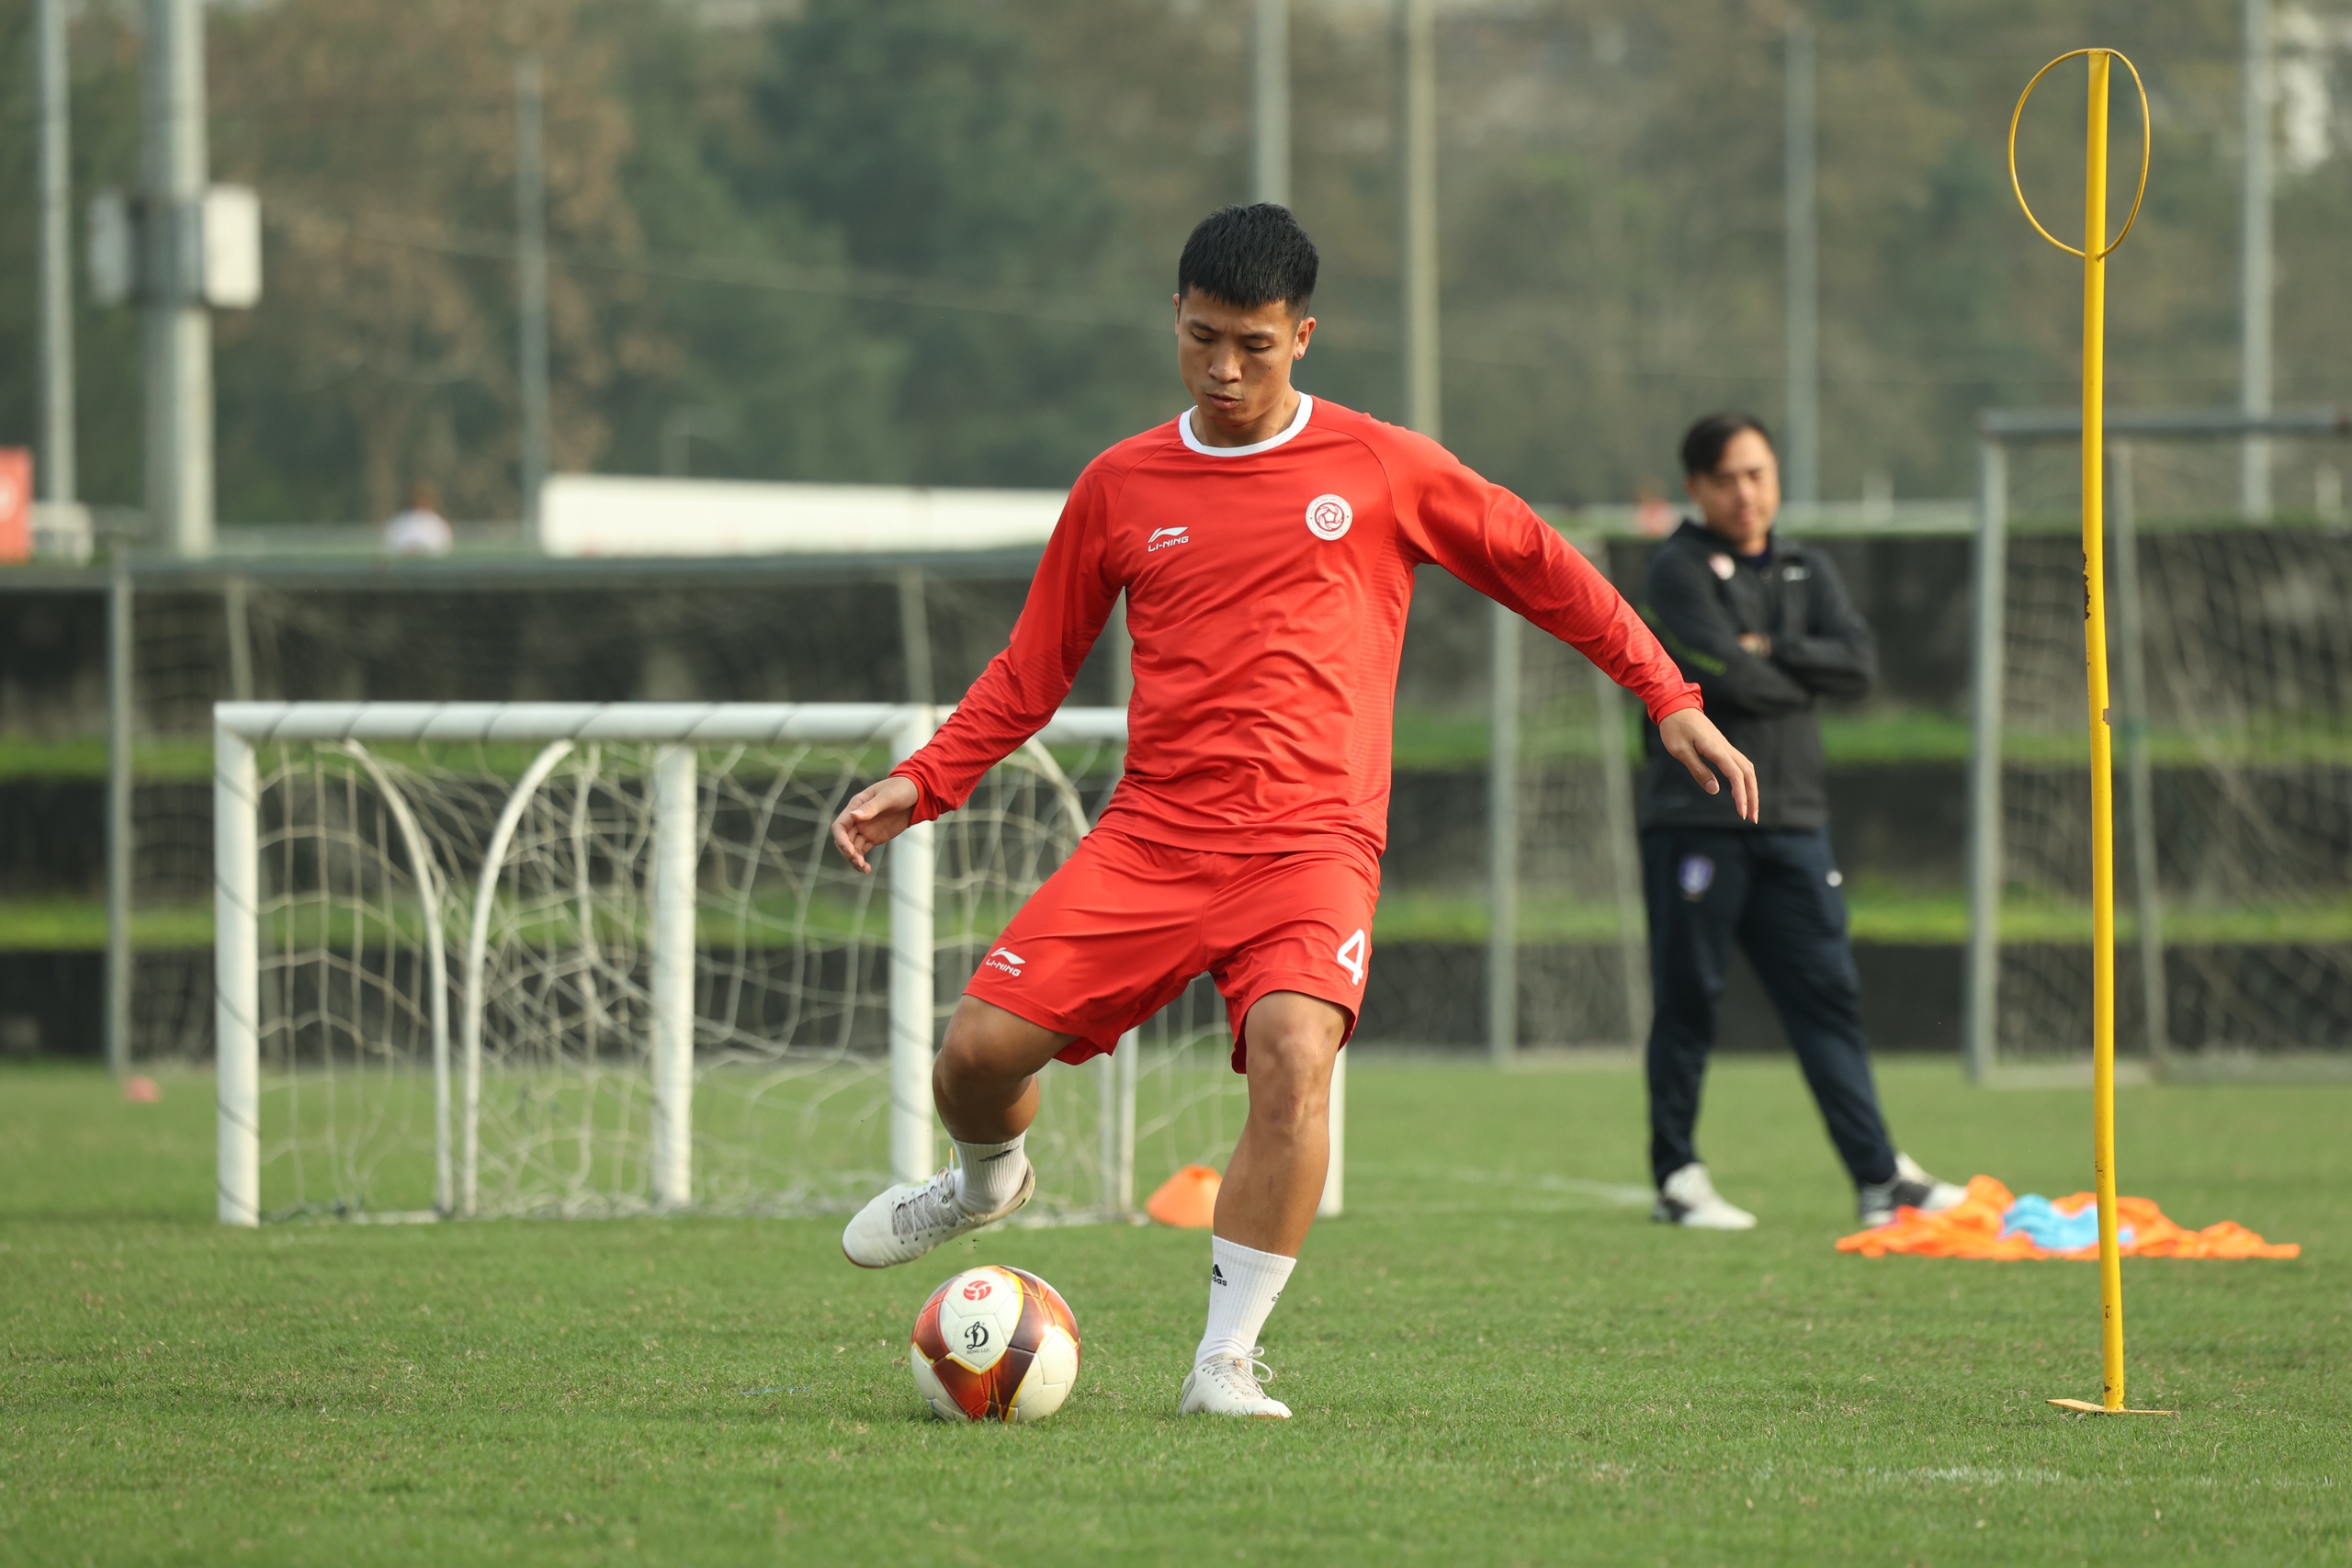 CLB Thể Công - Viettel tích cực tập luyện chuẩn bị đấu Khánh Hòa FC- Ảnh 5.